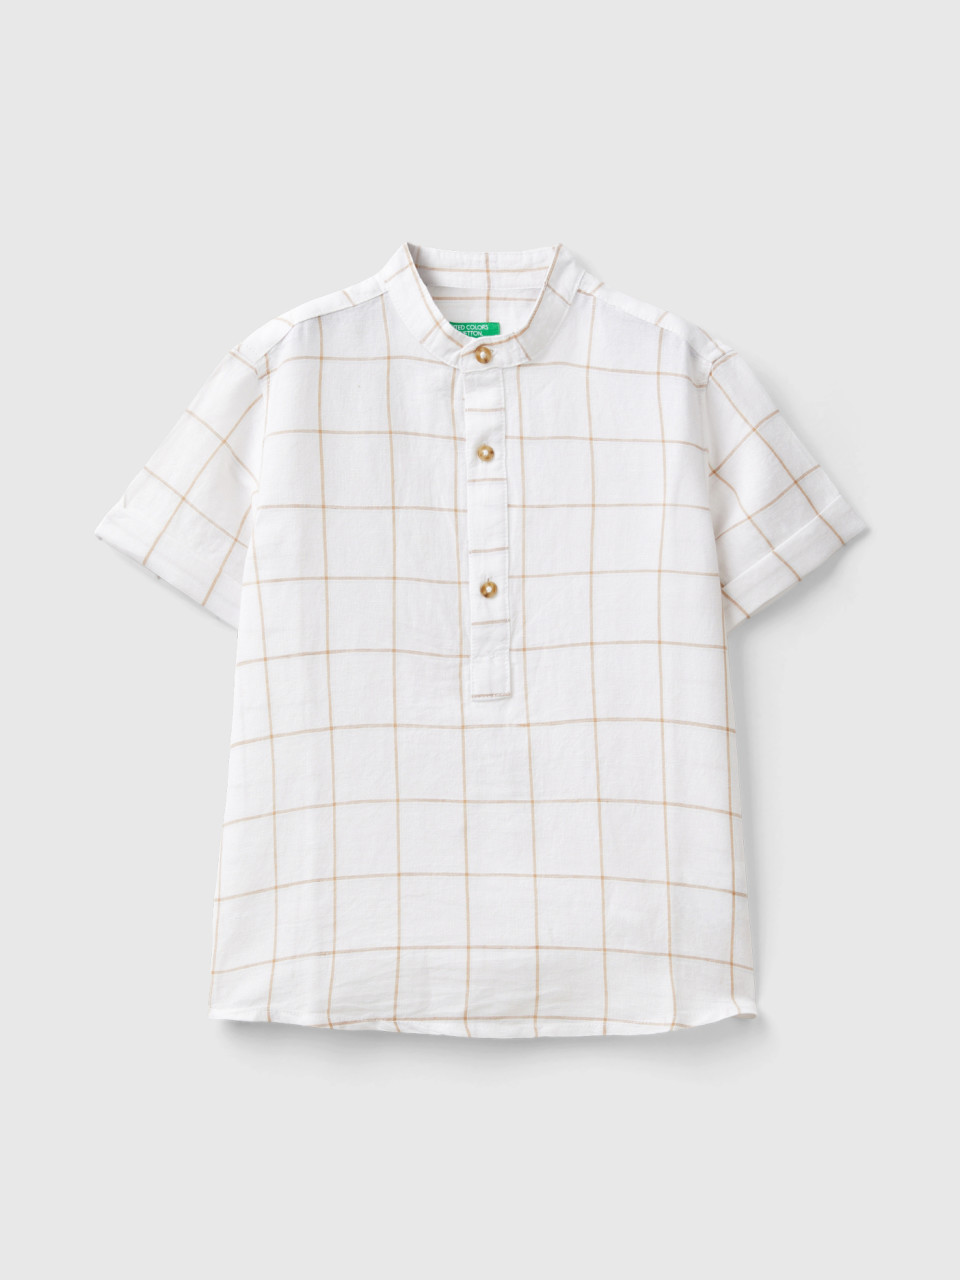 Benetton, Check Mandarin Shirt, Creamy White, Kids